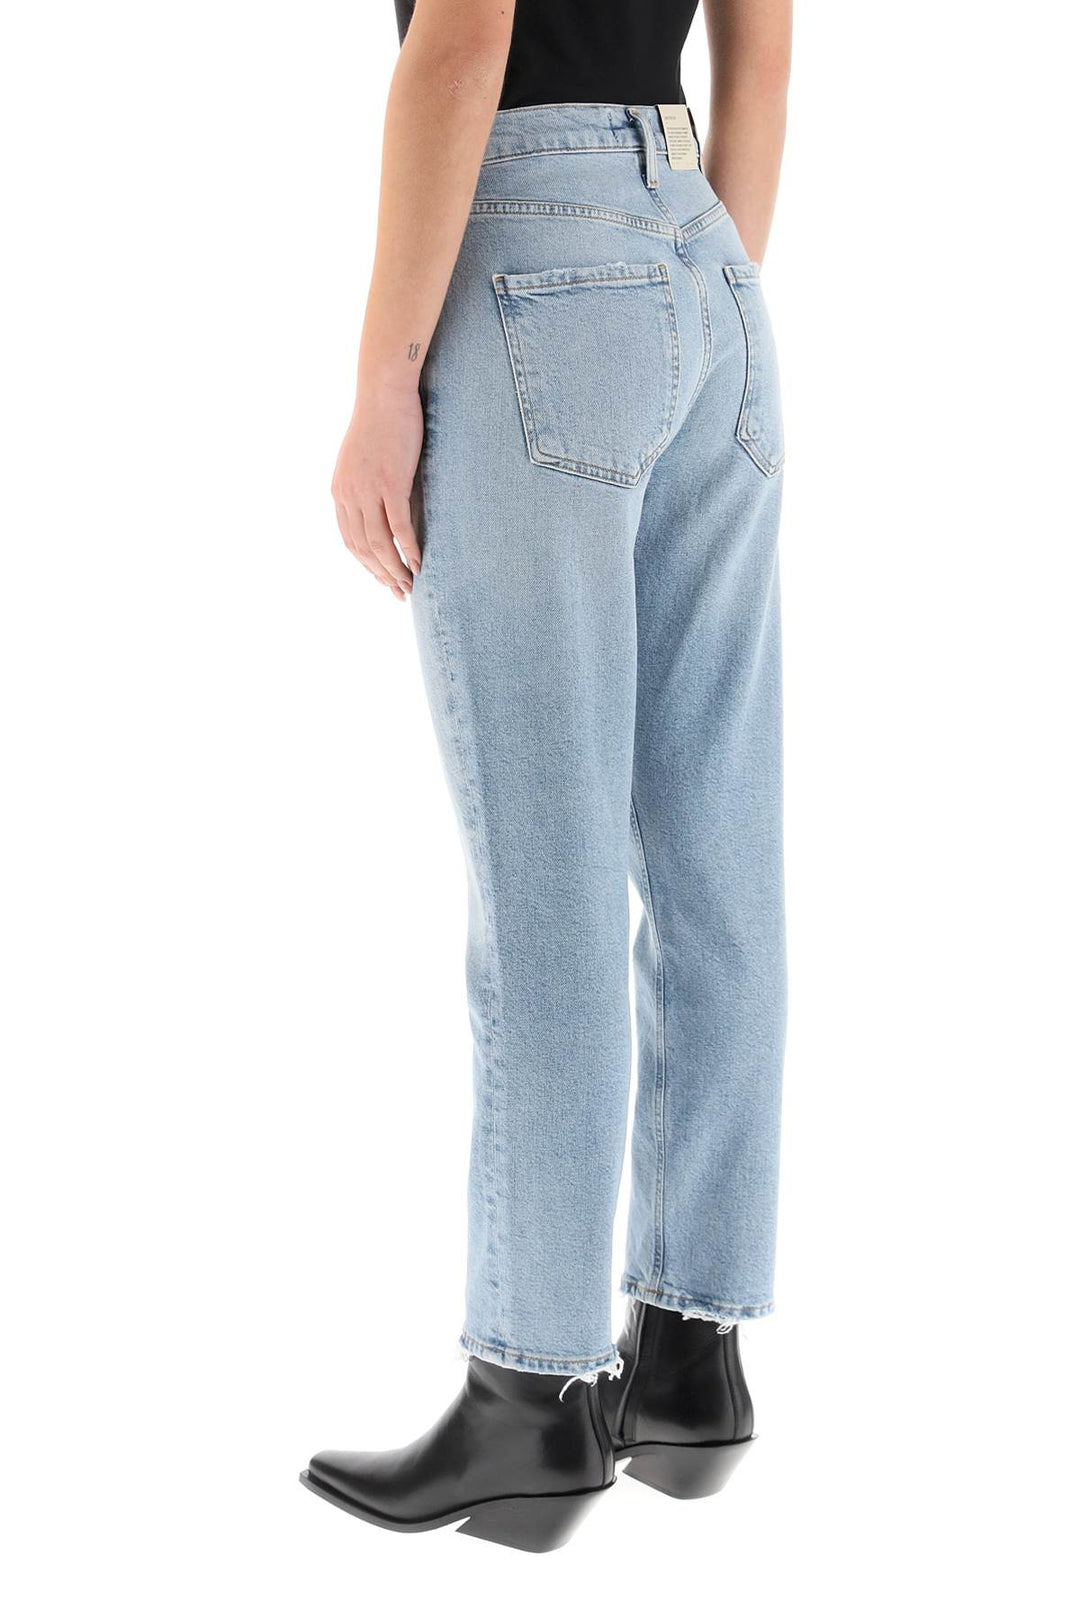 Agolde 'Riley' Jeans   Celeste